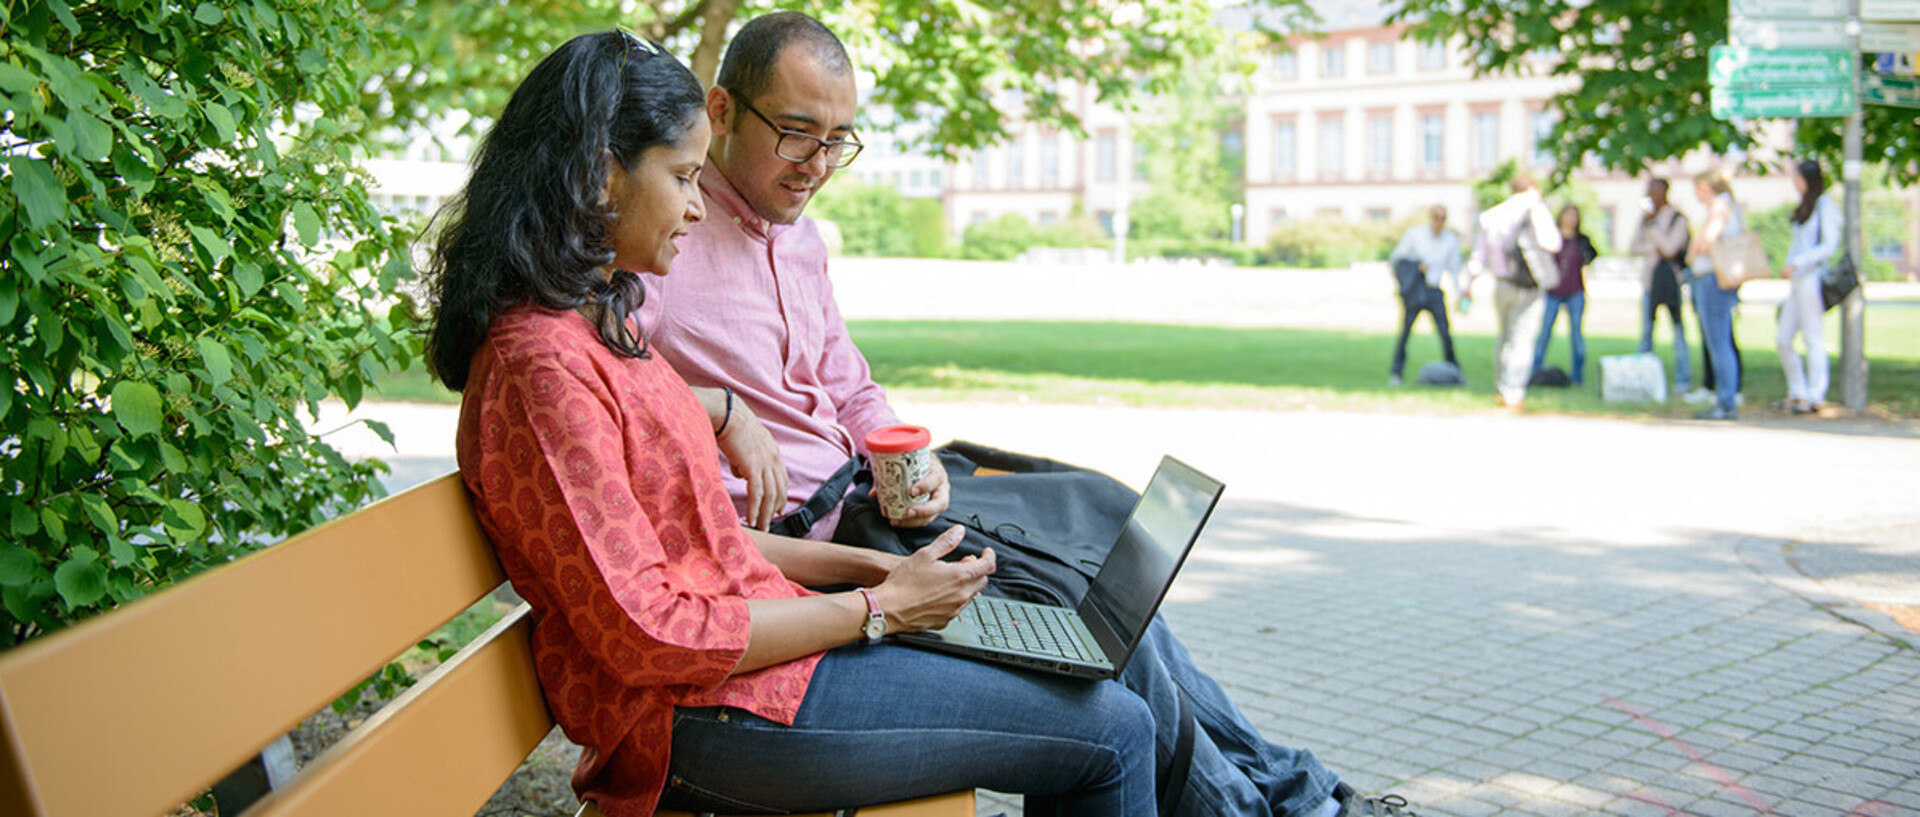 Zwei Personen sitzen mit einem Laptop auf einer Bank im Grünen.